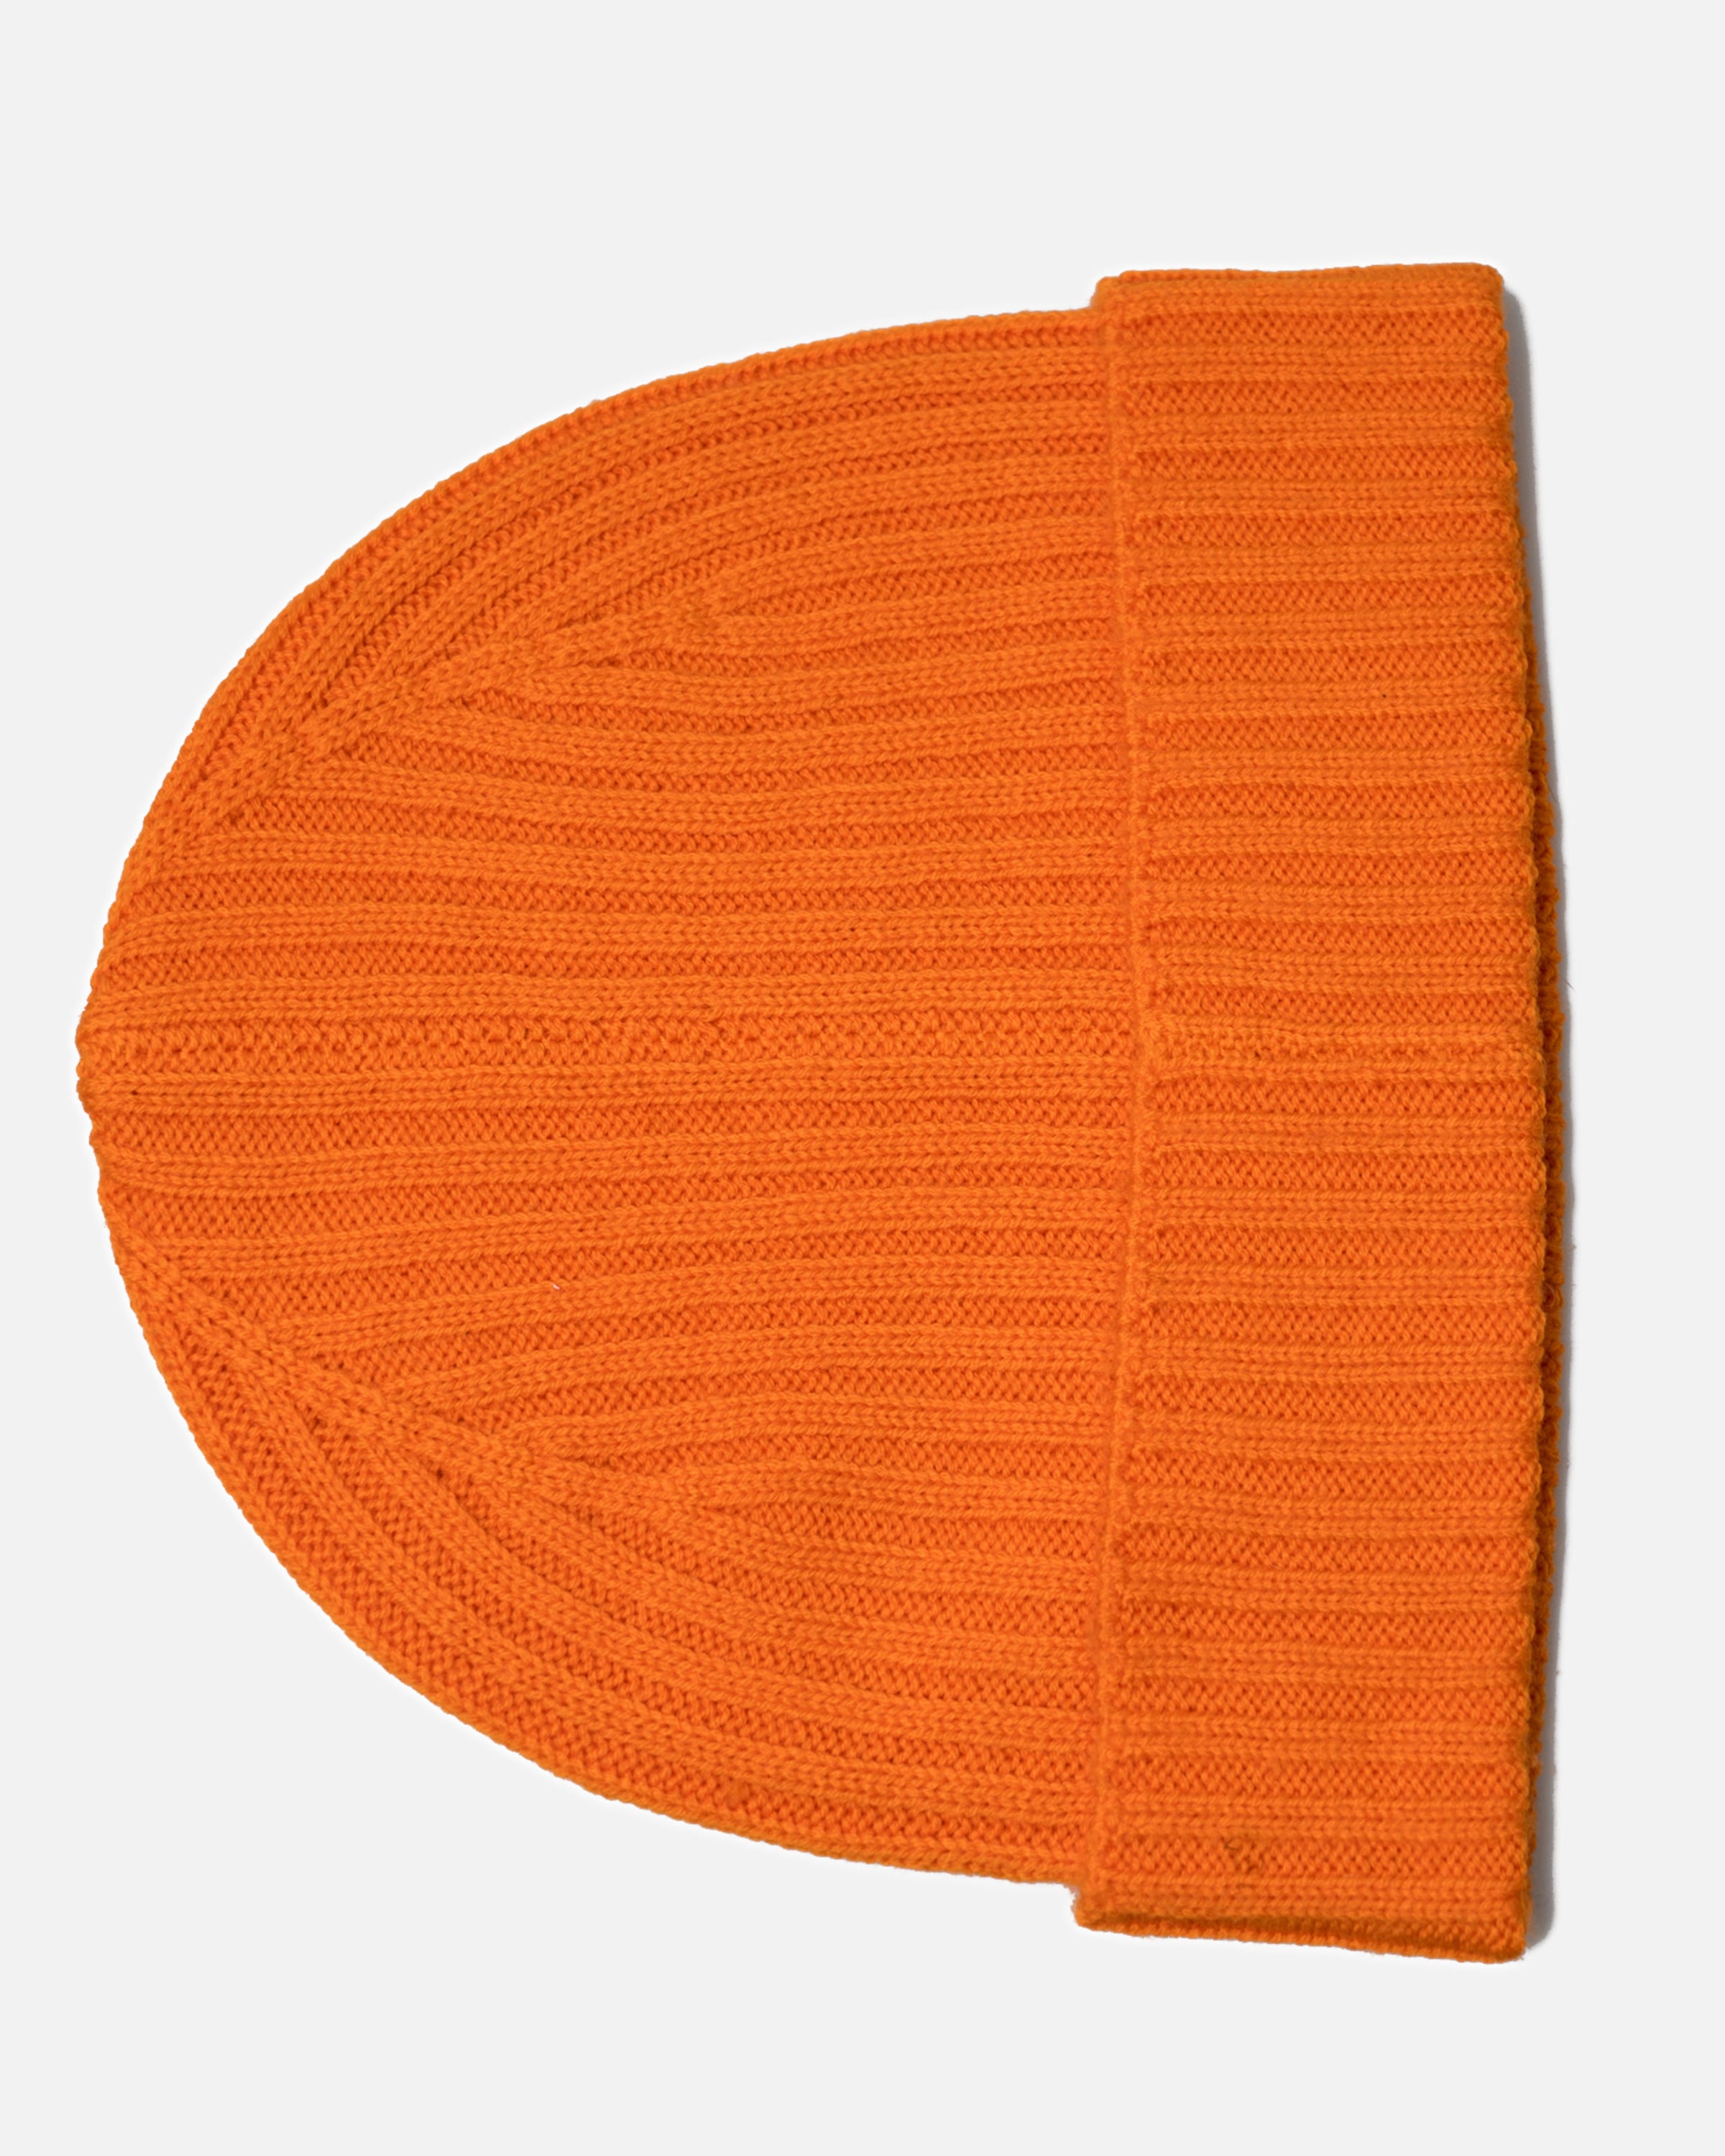 Strickmütze aus 100% Merino, Damen und Herren (Orange)